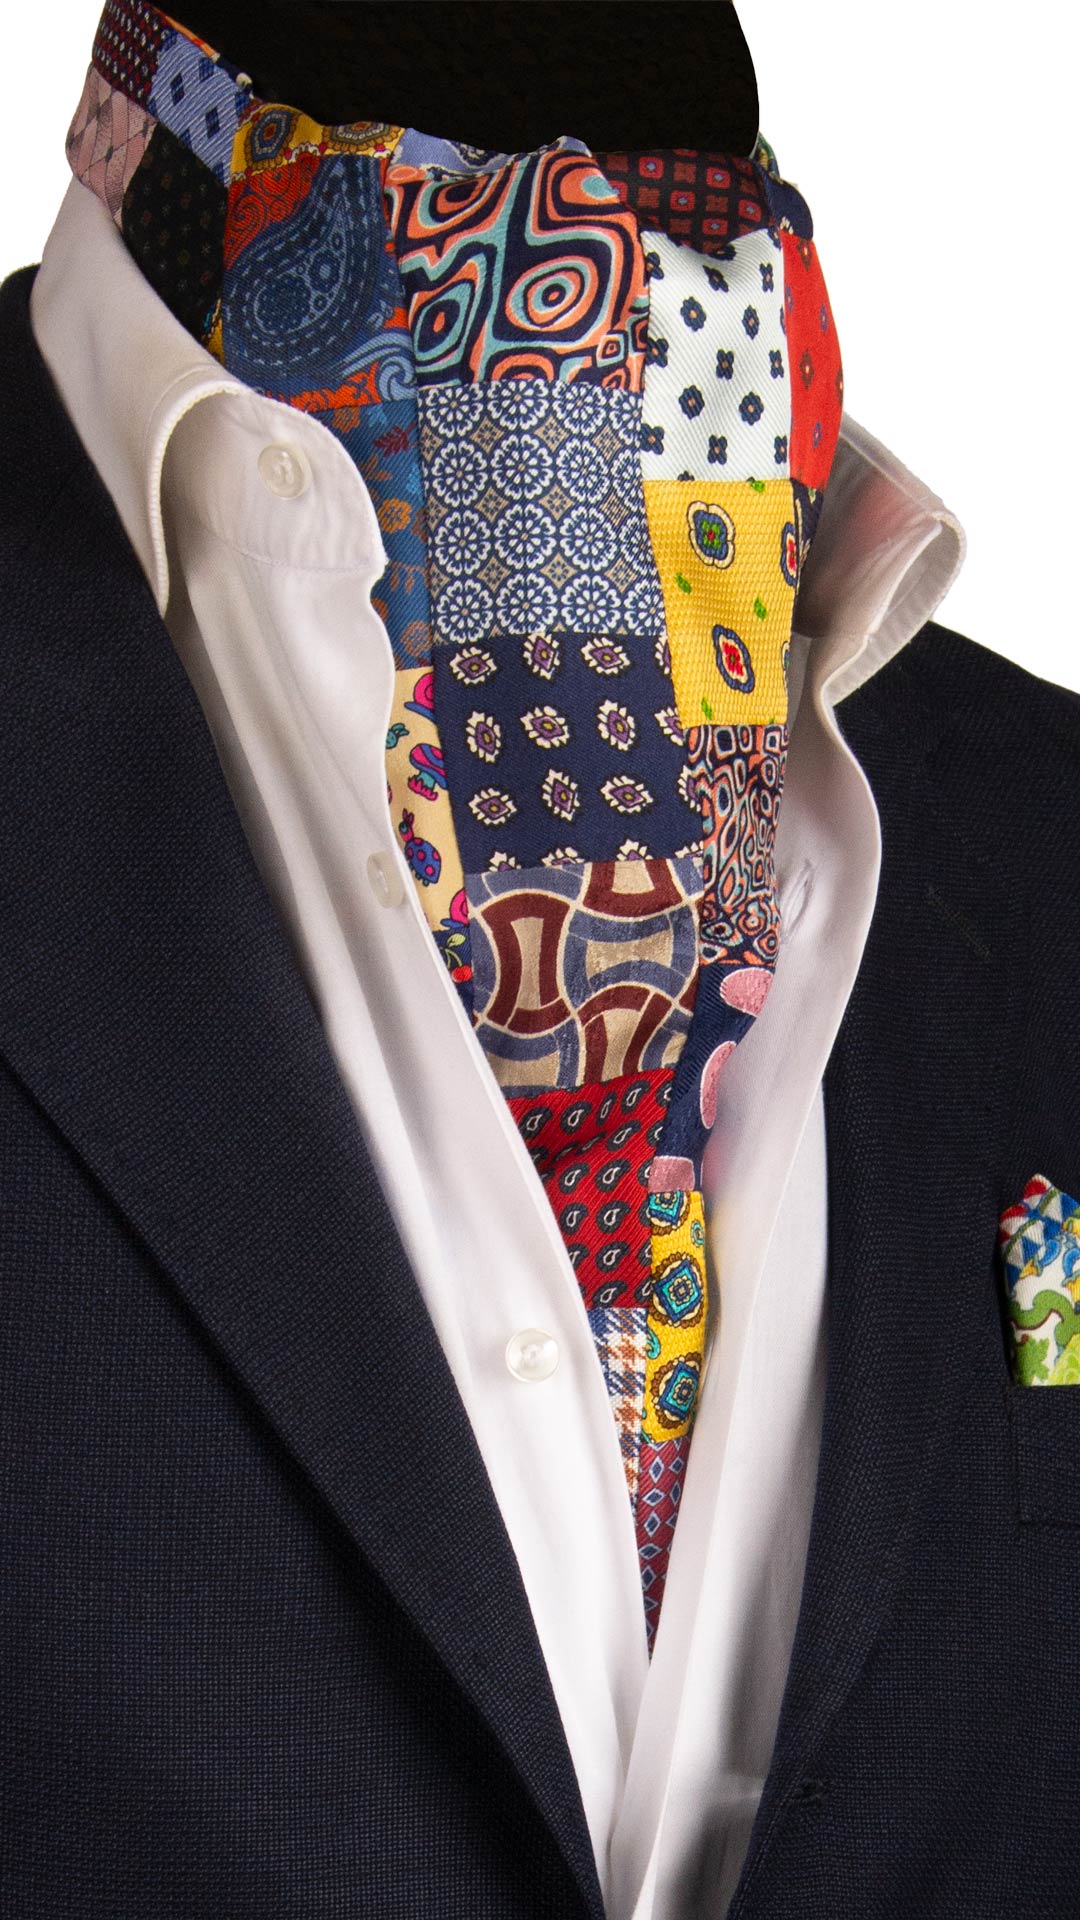 Ascot Stampa di Seta Patchwork Fantasia Multicolor AP37 Made in Italy Graffeo Cravatte